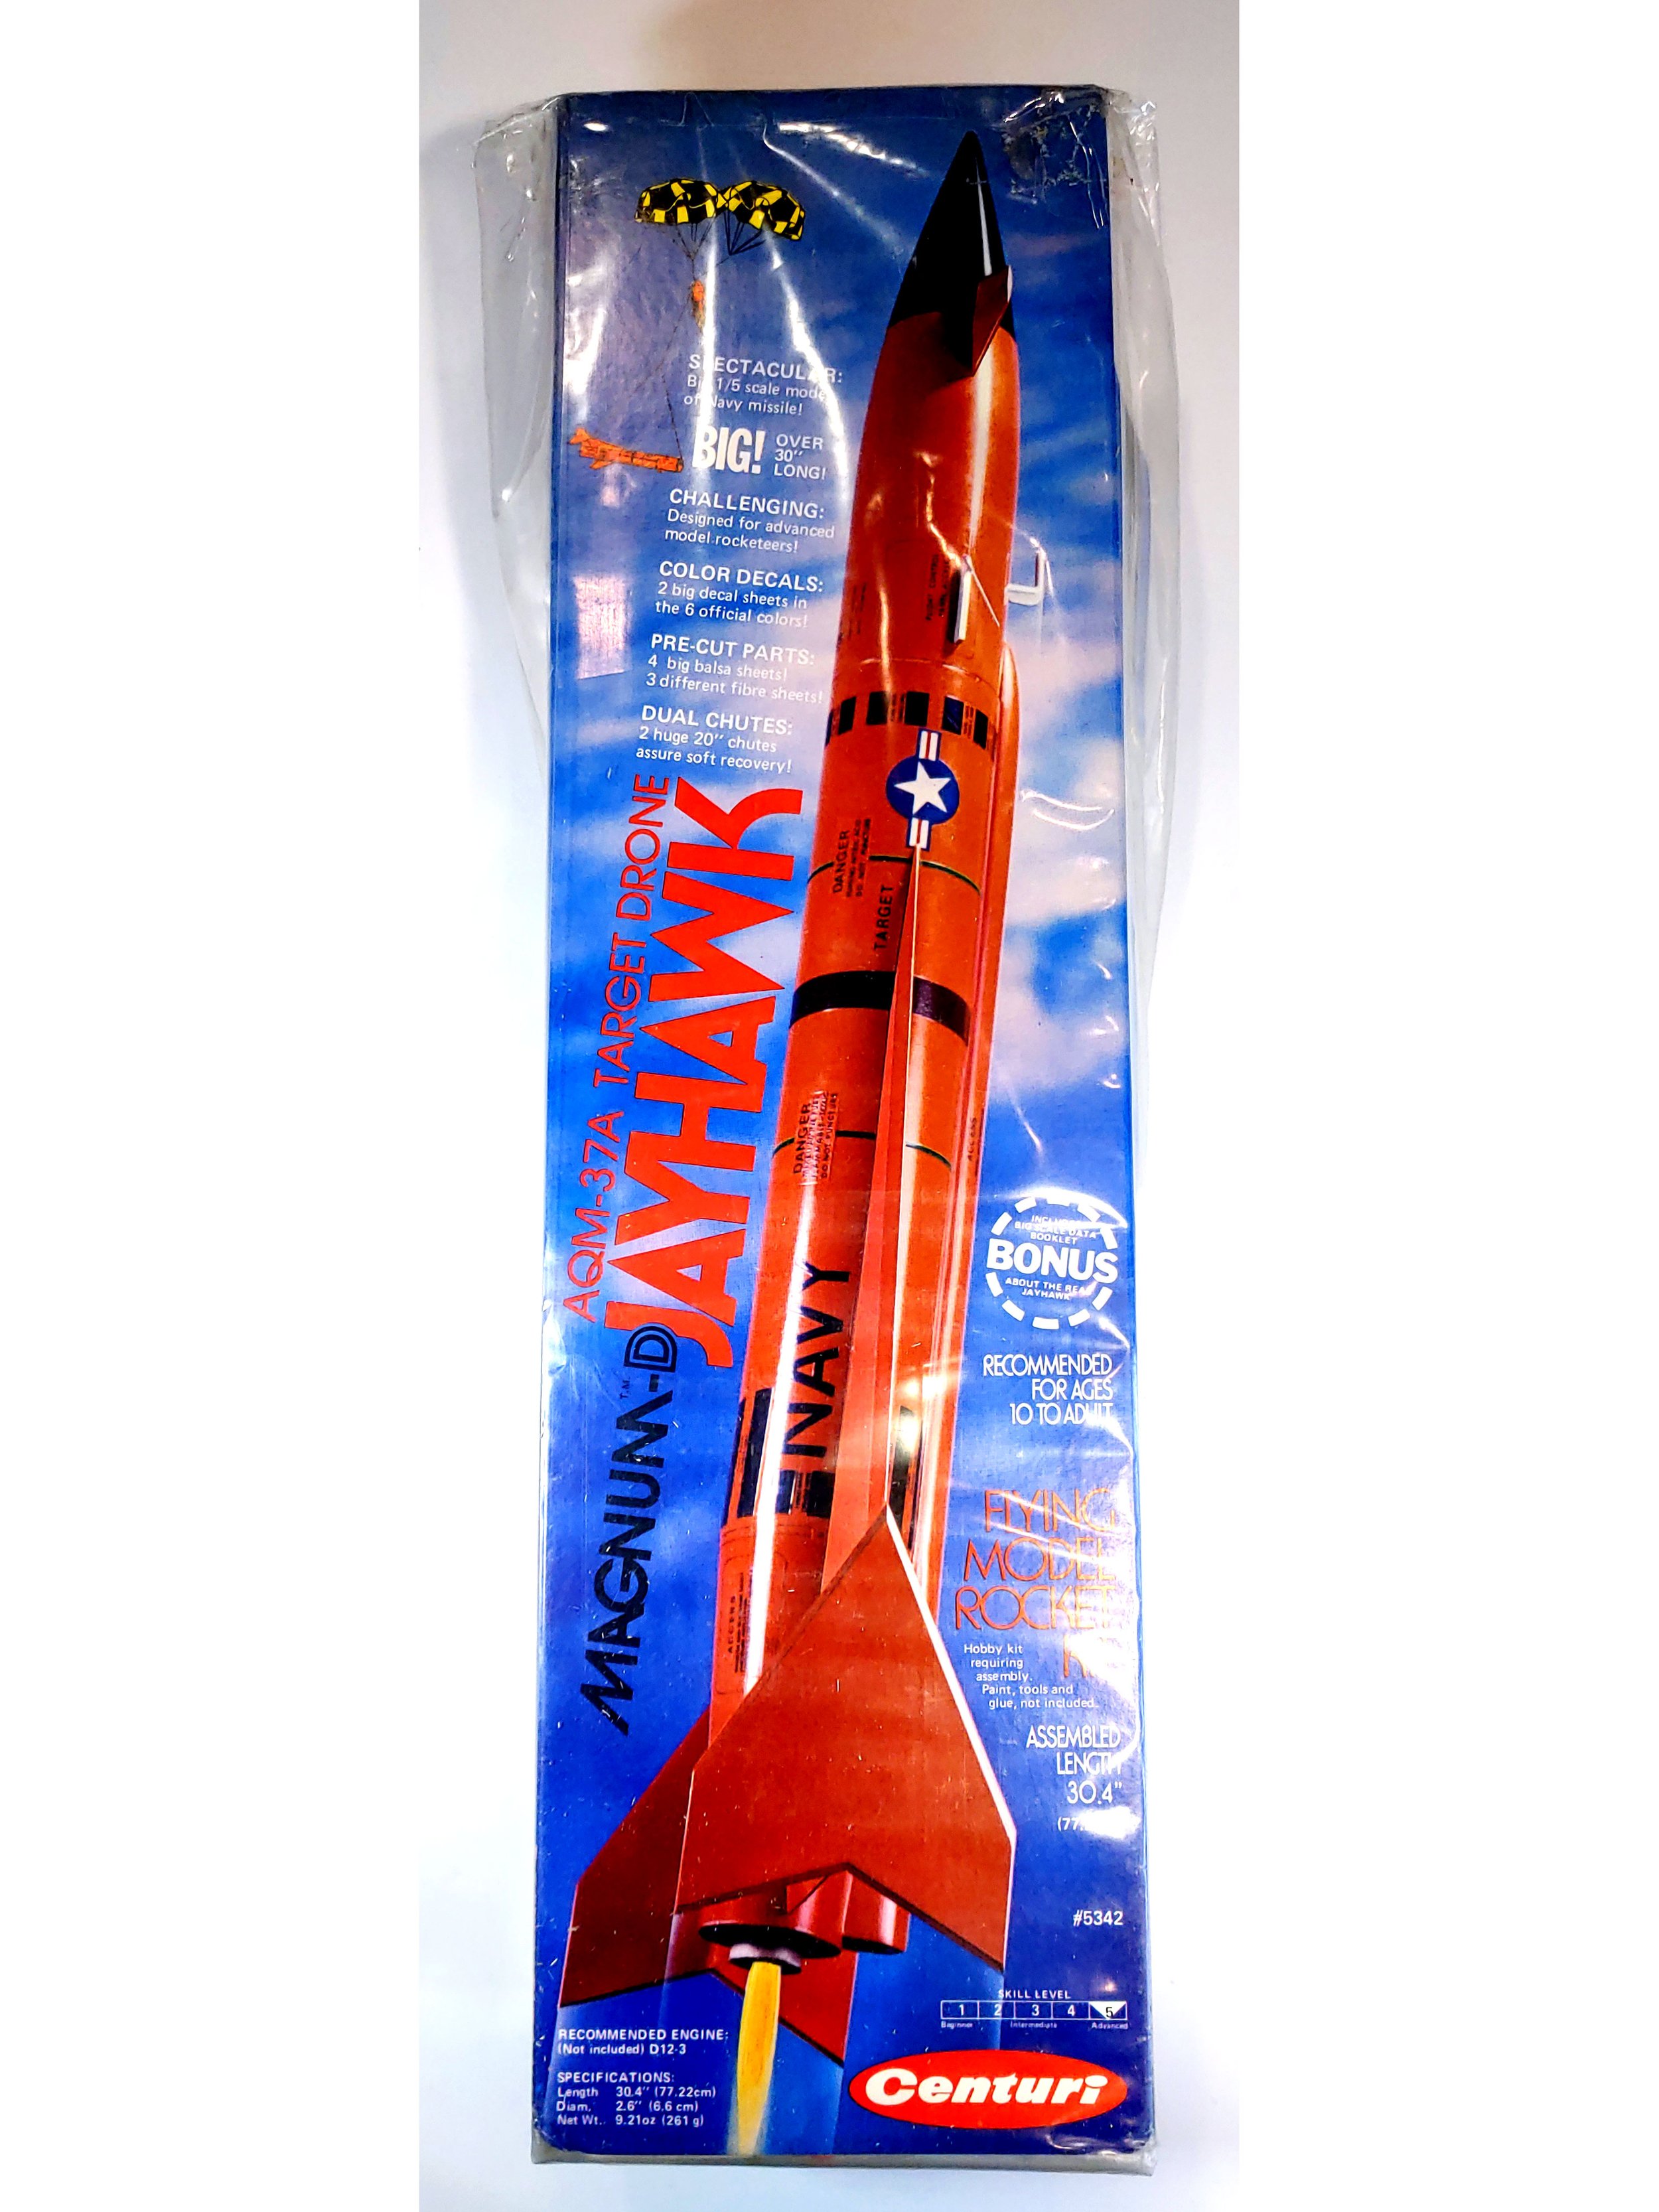 Centuri Model Rocket Magnum D Jayhawk Kit 5342 Vintage for sale online 